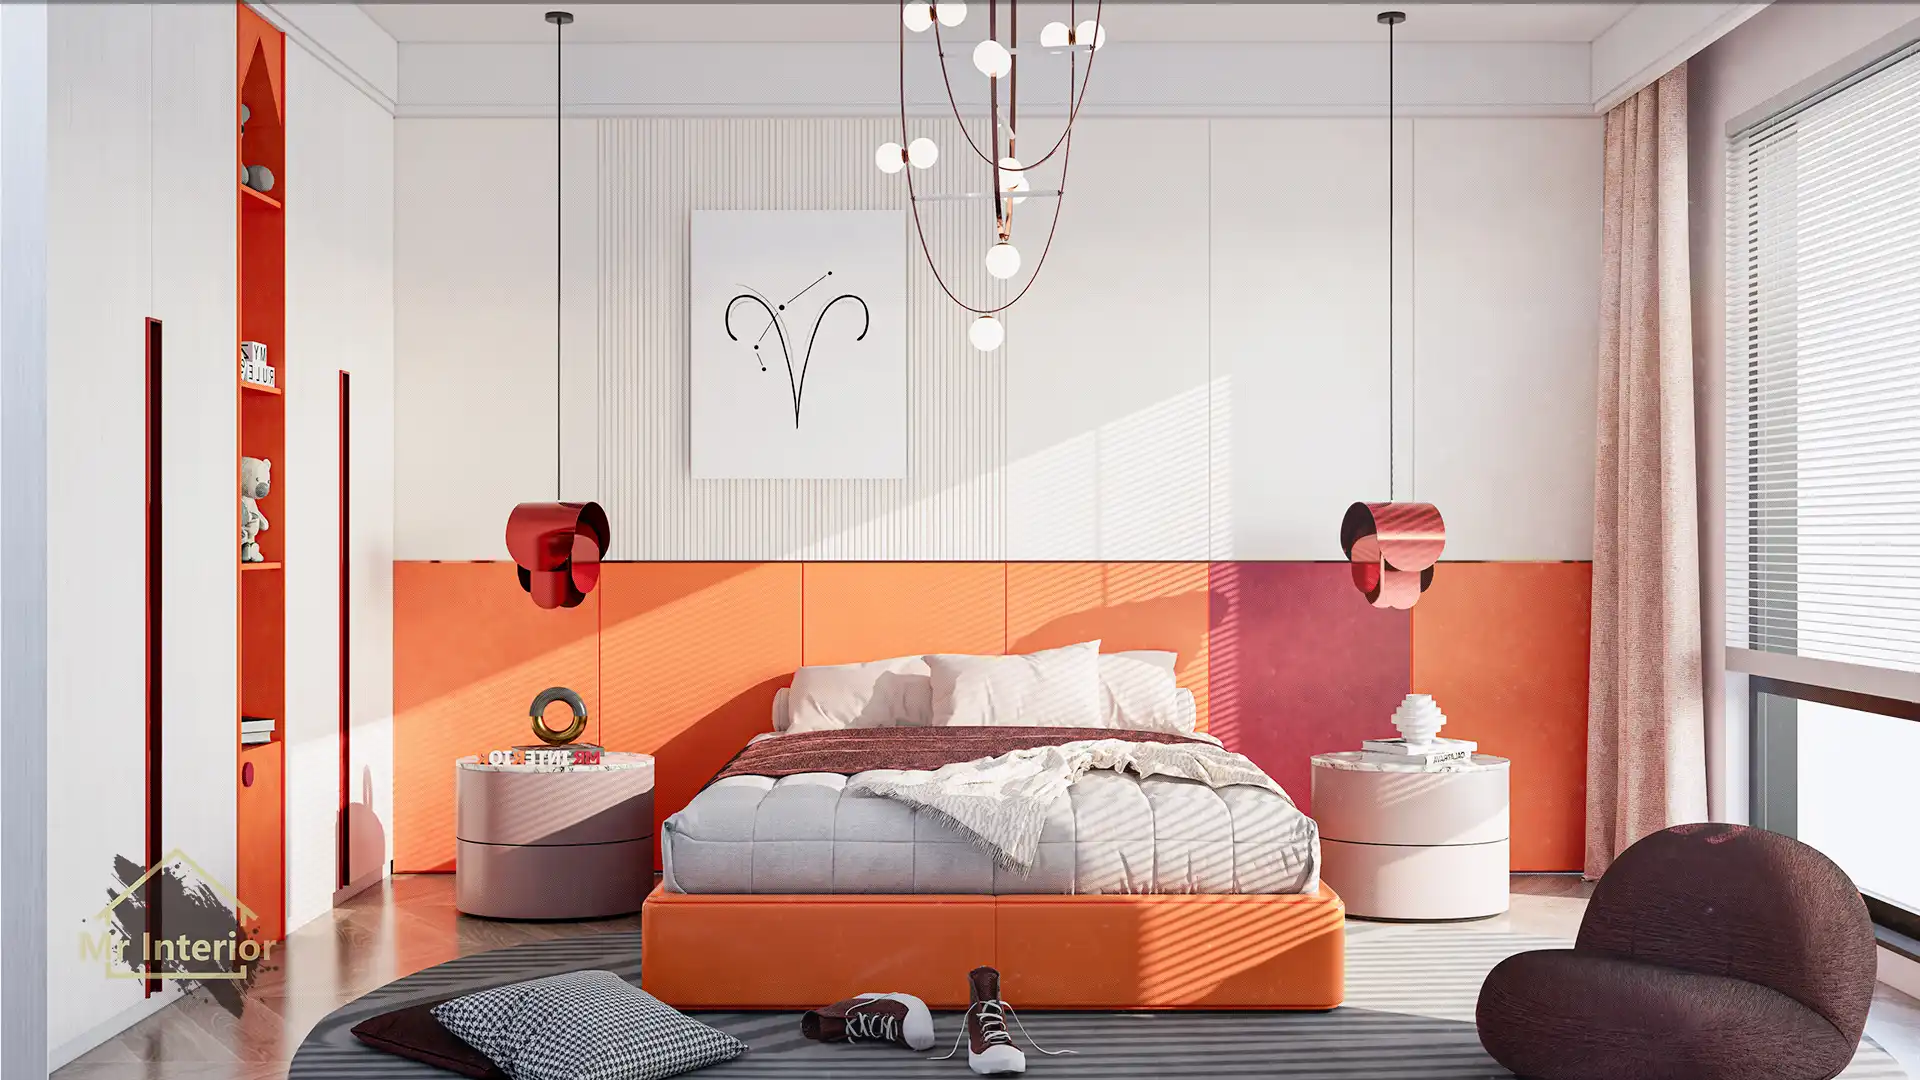 這是白羊座的睡房。設計風格探用了現代風；色調明亮，米色主調，紅色及橙色點綴；圖片中句含了橙色軟墊雙人床，白色掩門大衣櫃，橙色開方式書櫃，白色及橙色及紅色特色牆身，深紅色懶人梳化，白羊座裝飾及自然光等。Mr Interior室內設計裝修及傢俬風格。